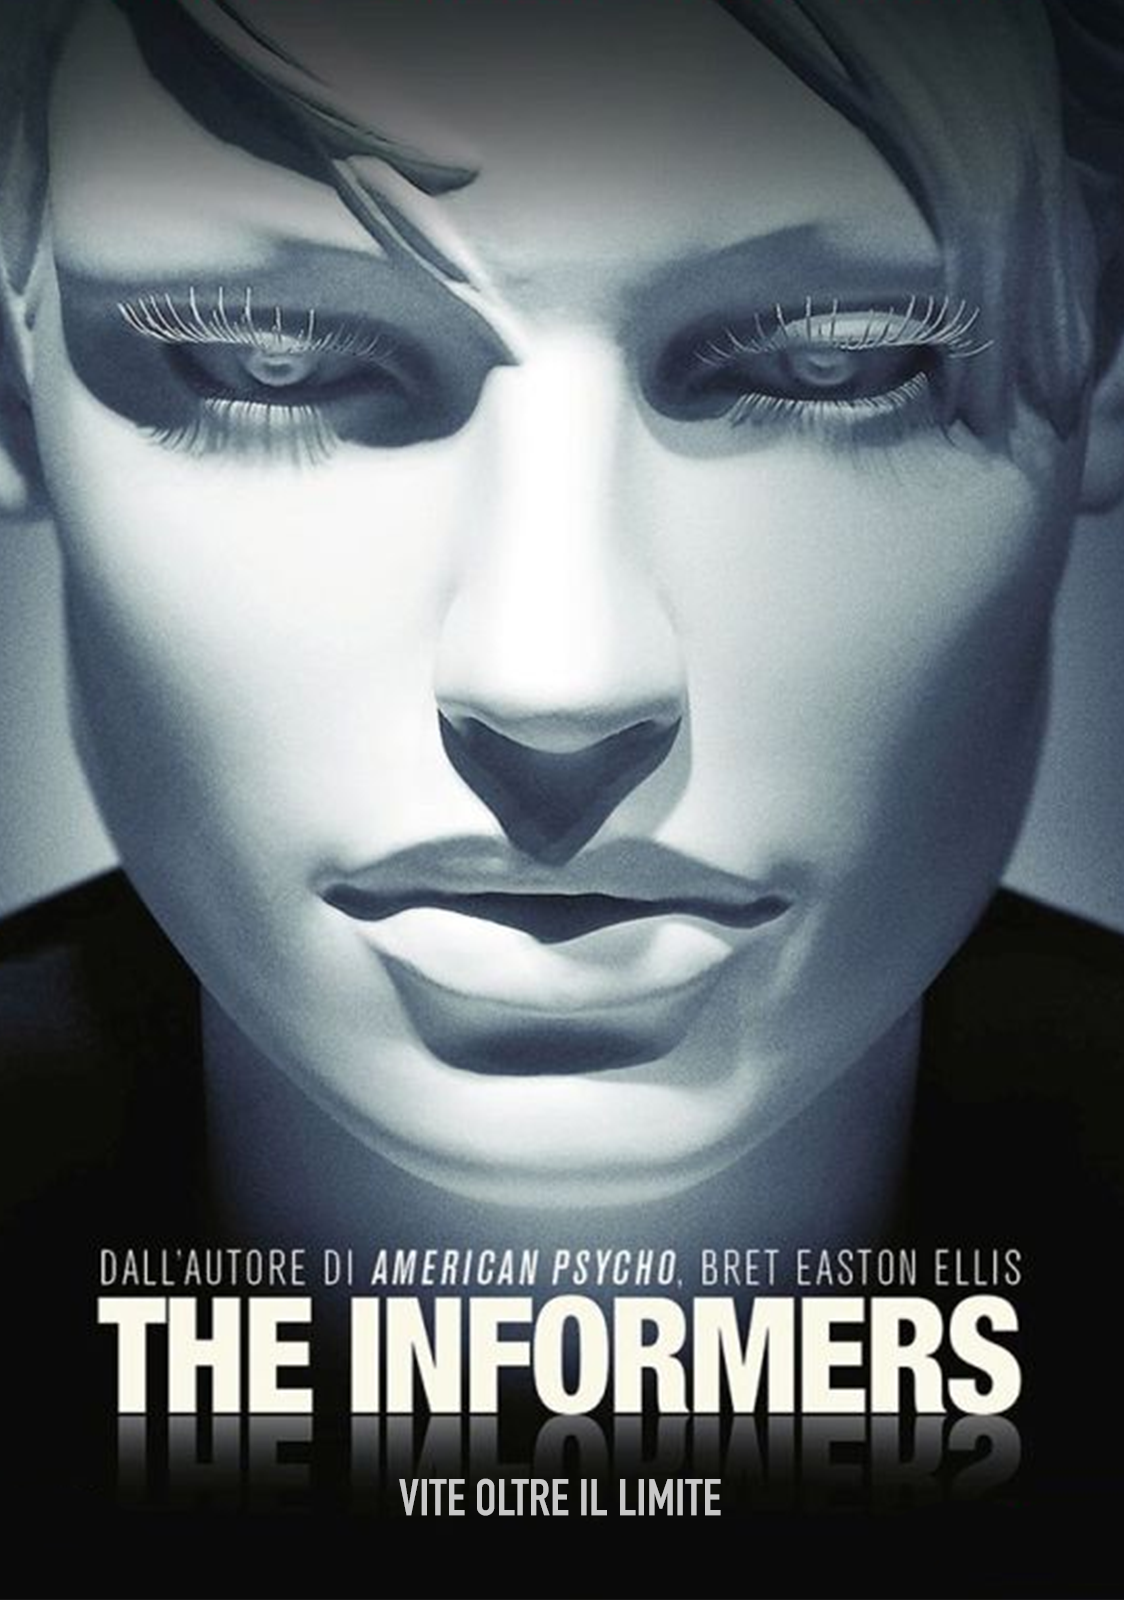 The Informers – Vite oltre il limite [HD] (2009)